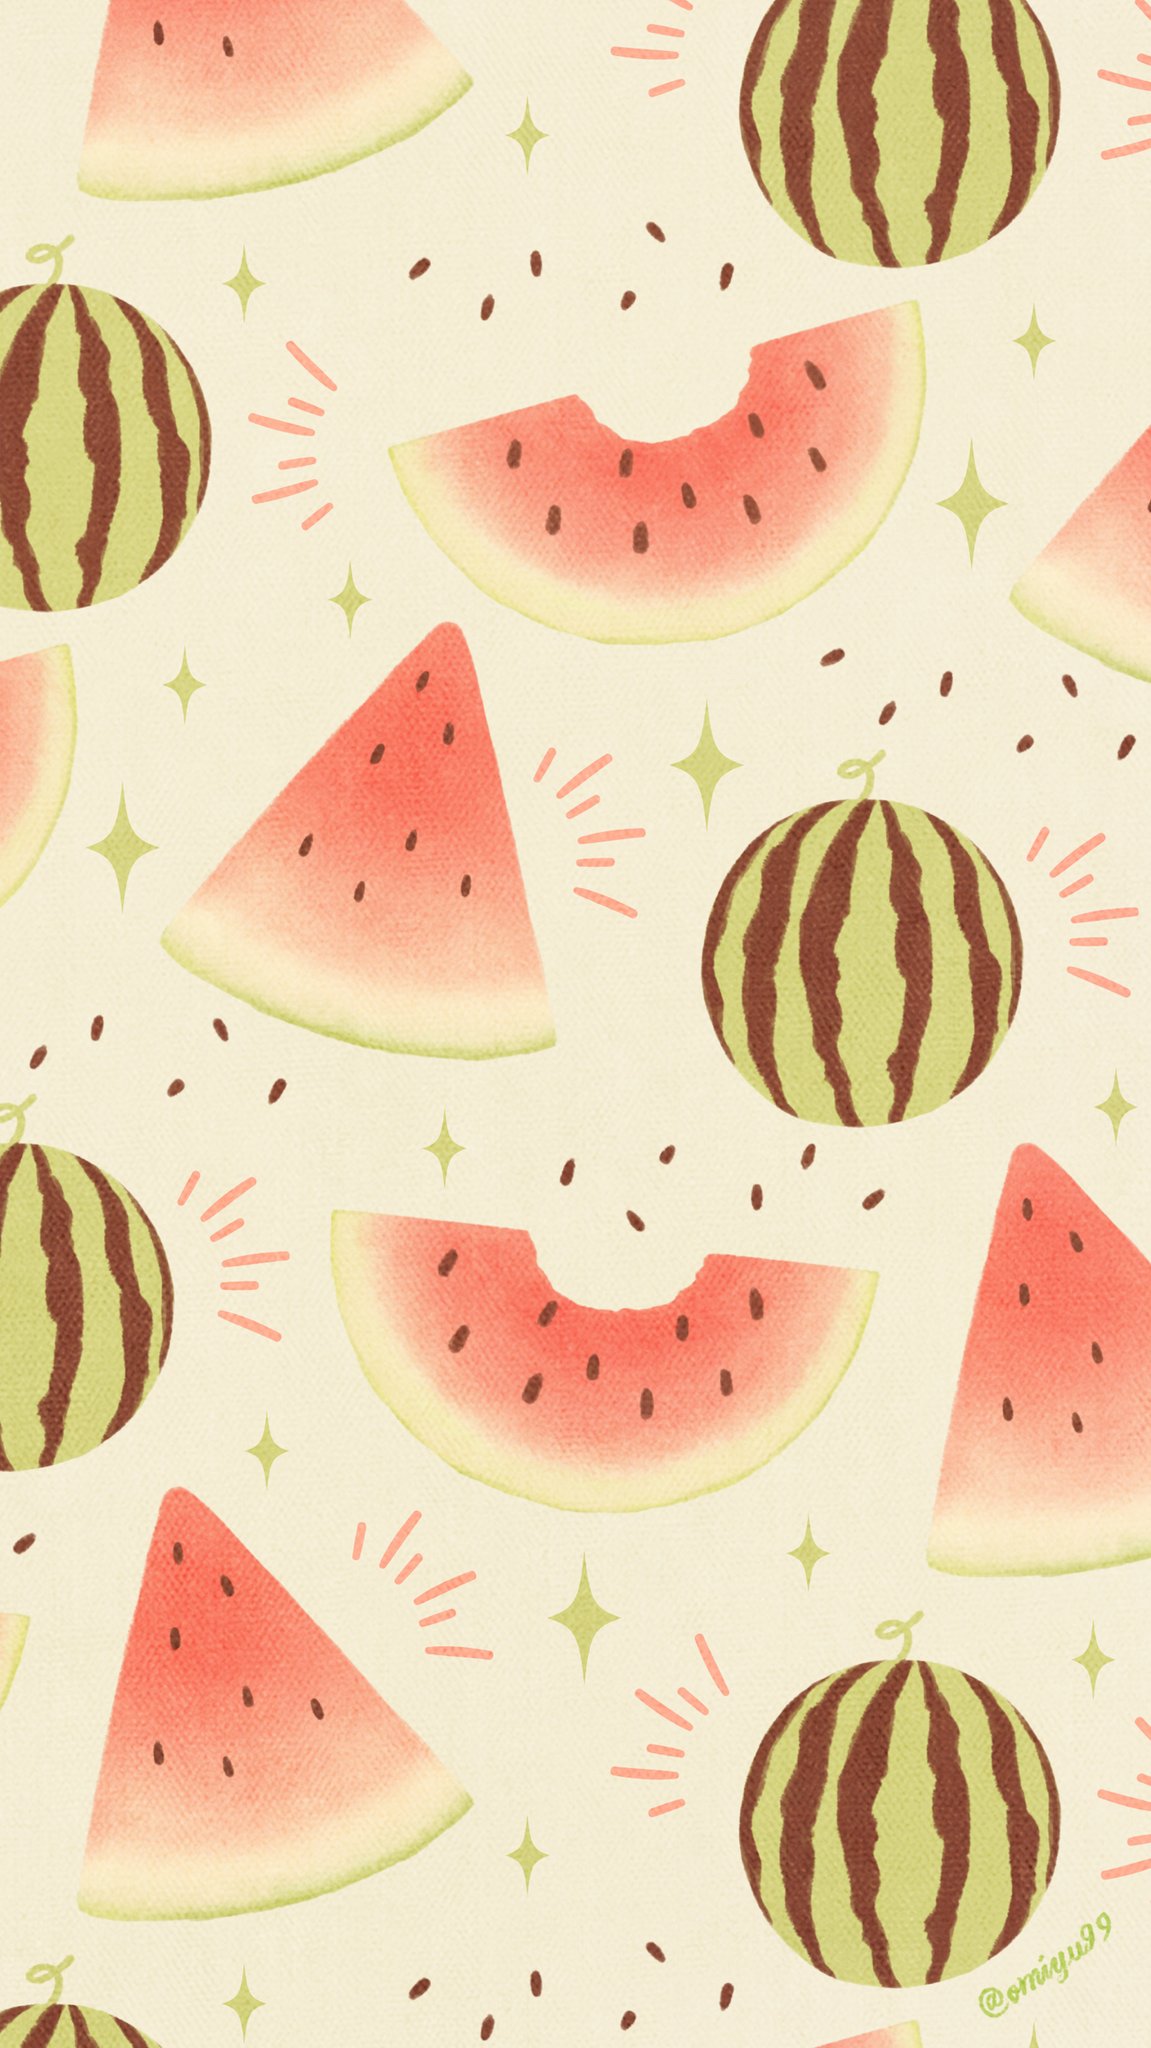 Omiyu お返事遅くなります スイカな壁紙 Illust Illustration 壁紙 イラスト Iphone壁紙 スイカ Watermelon 食べ物